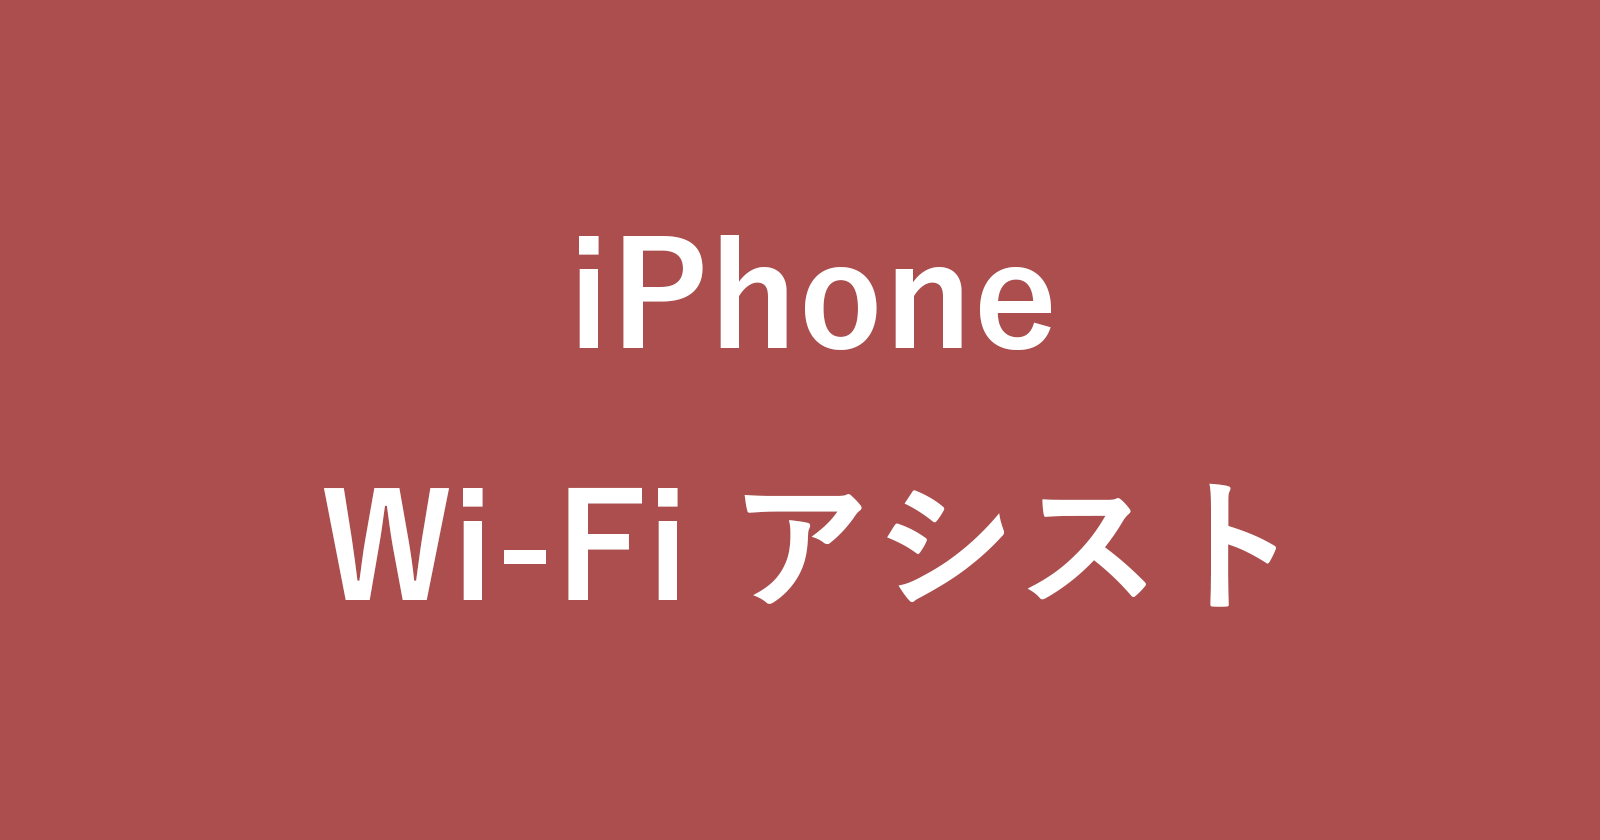 iphone wi fi assist